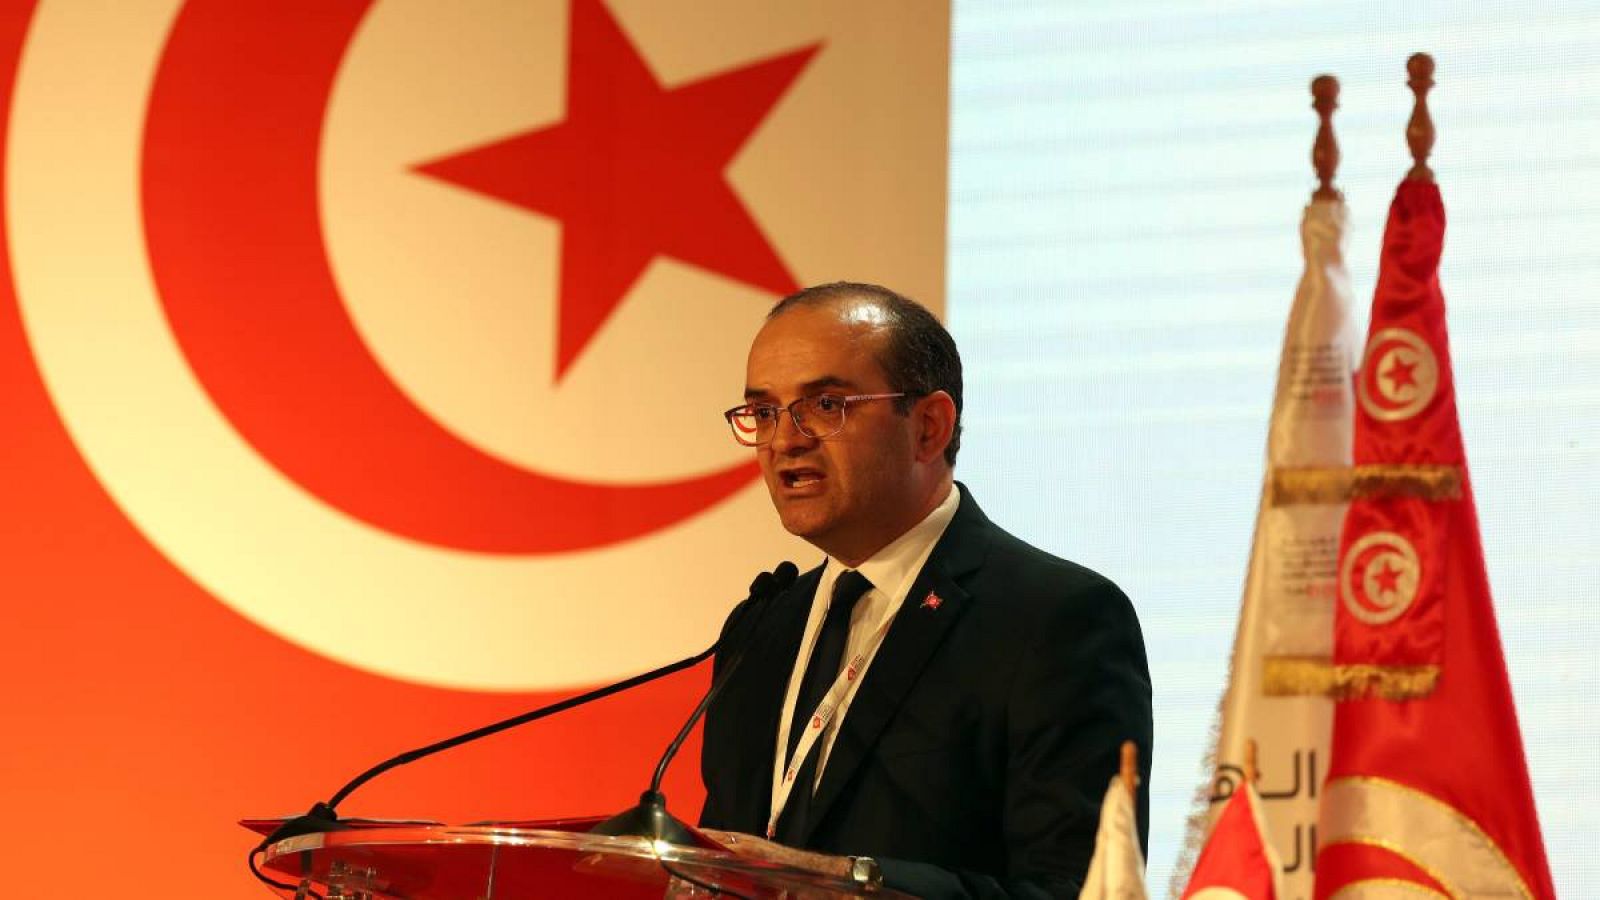 Farouk Bouasker, presidente de la Alta Autoridad Independiente para las Elecciones, habla durante el anuncio de los resultados preliminares de un referéndum sobre una nueva constitución en Túnez.